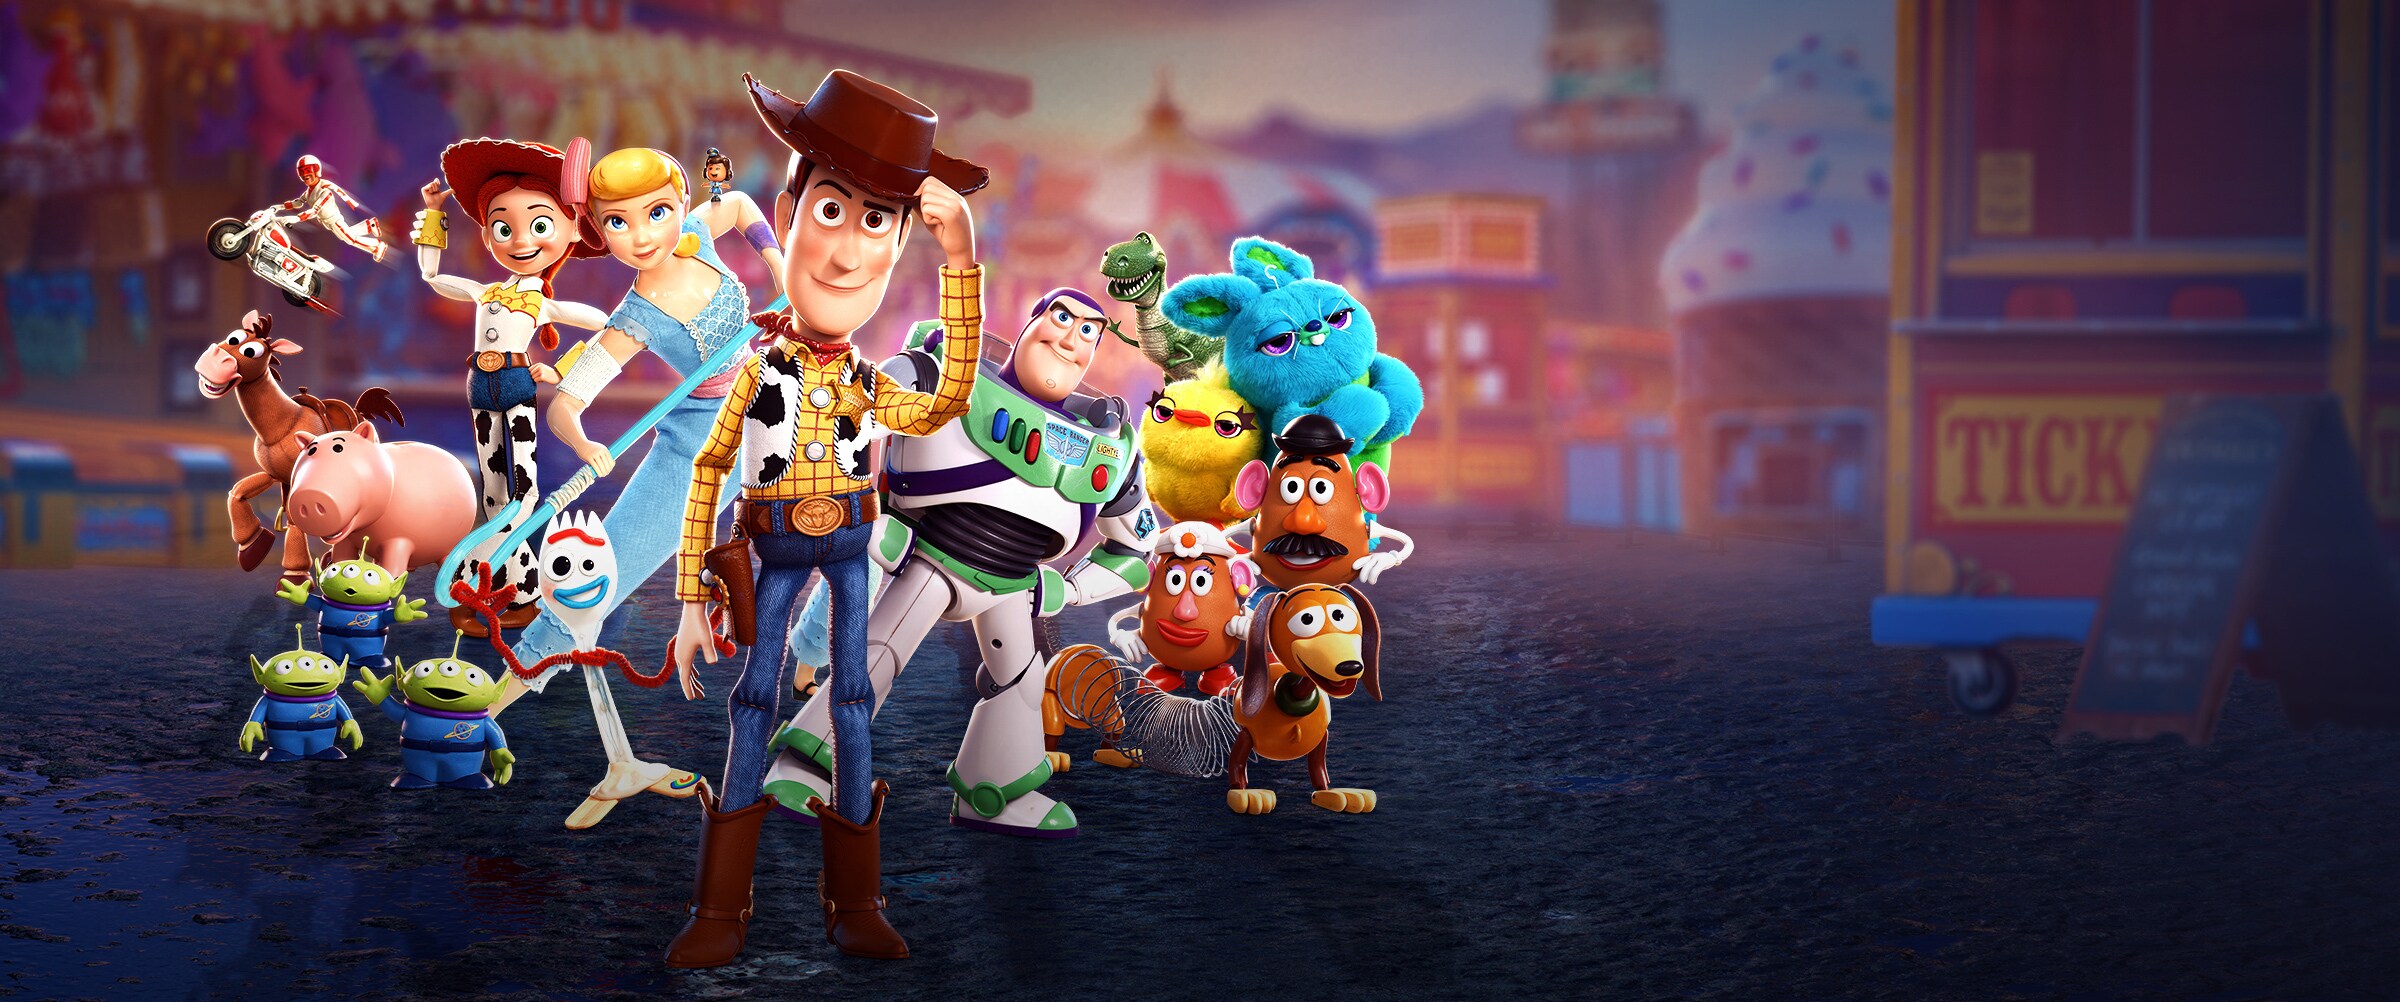 DisneyPixar Toy Story 4 - Banner Hero - Showcase - All toys